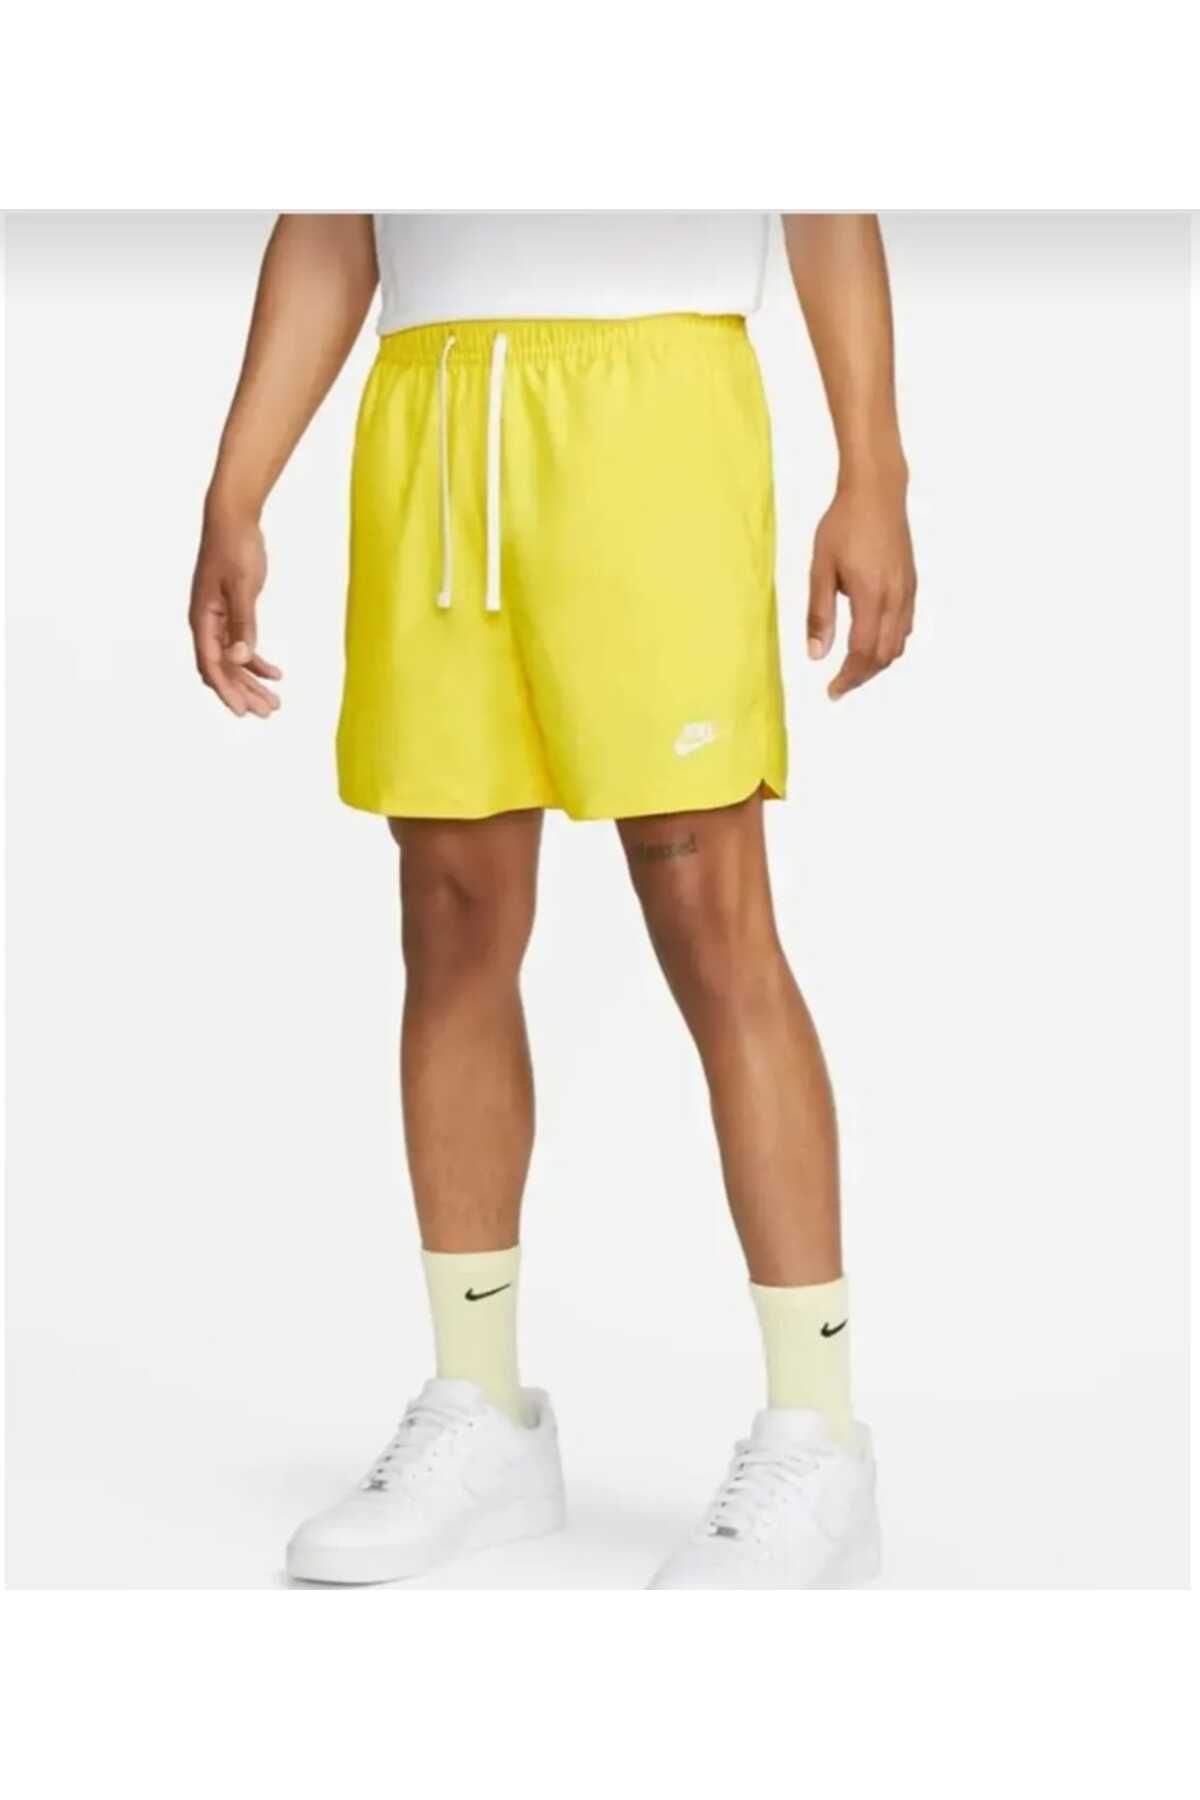 Nike Sportwear Shorts For Men